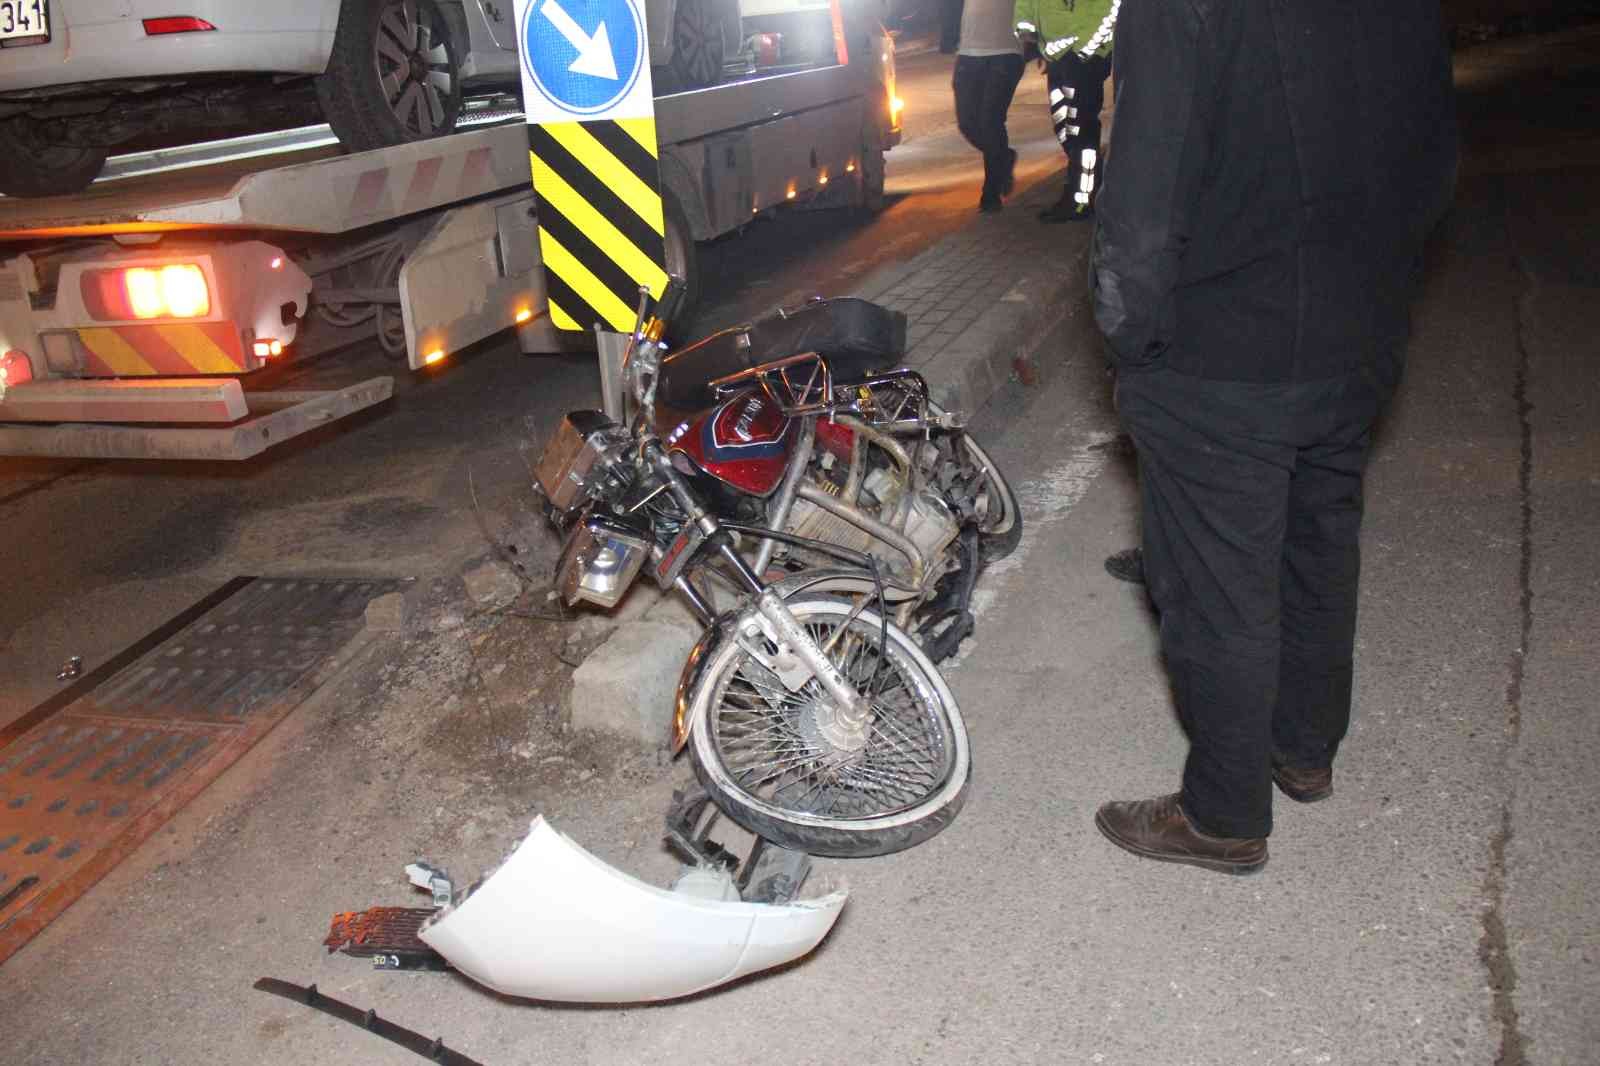 KOCAELİ(İHA) – Kocaeli’nin İzmit ilçesinde kavşaktan dönmek isteyen otomobil ile motosiklet çarpıştı. Kazada 1’i ağır 2 kişi yaralanırken olay ...